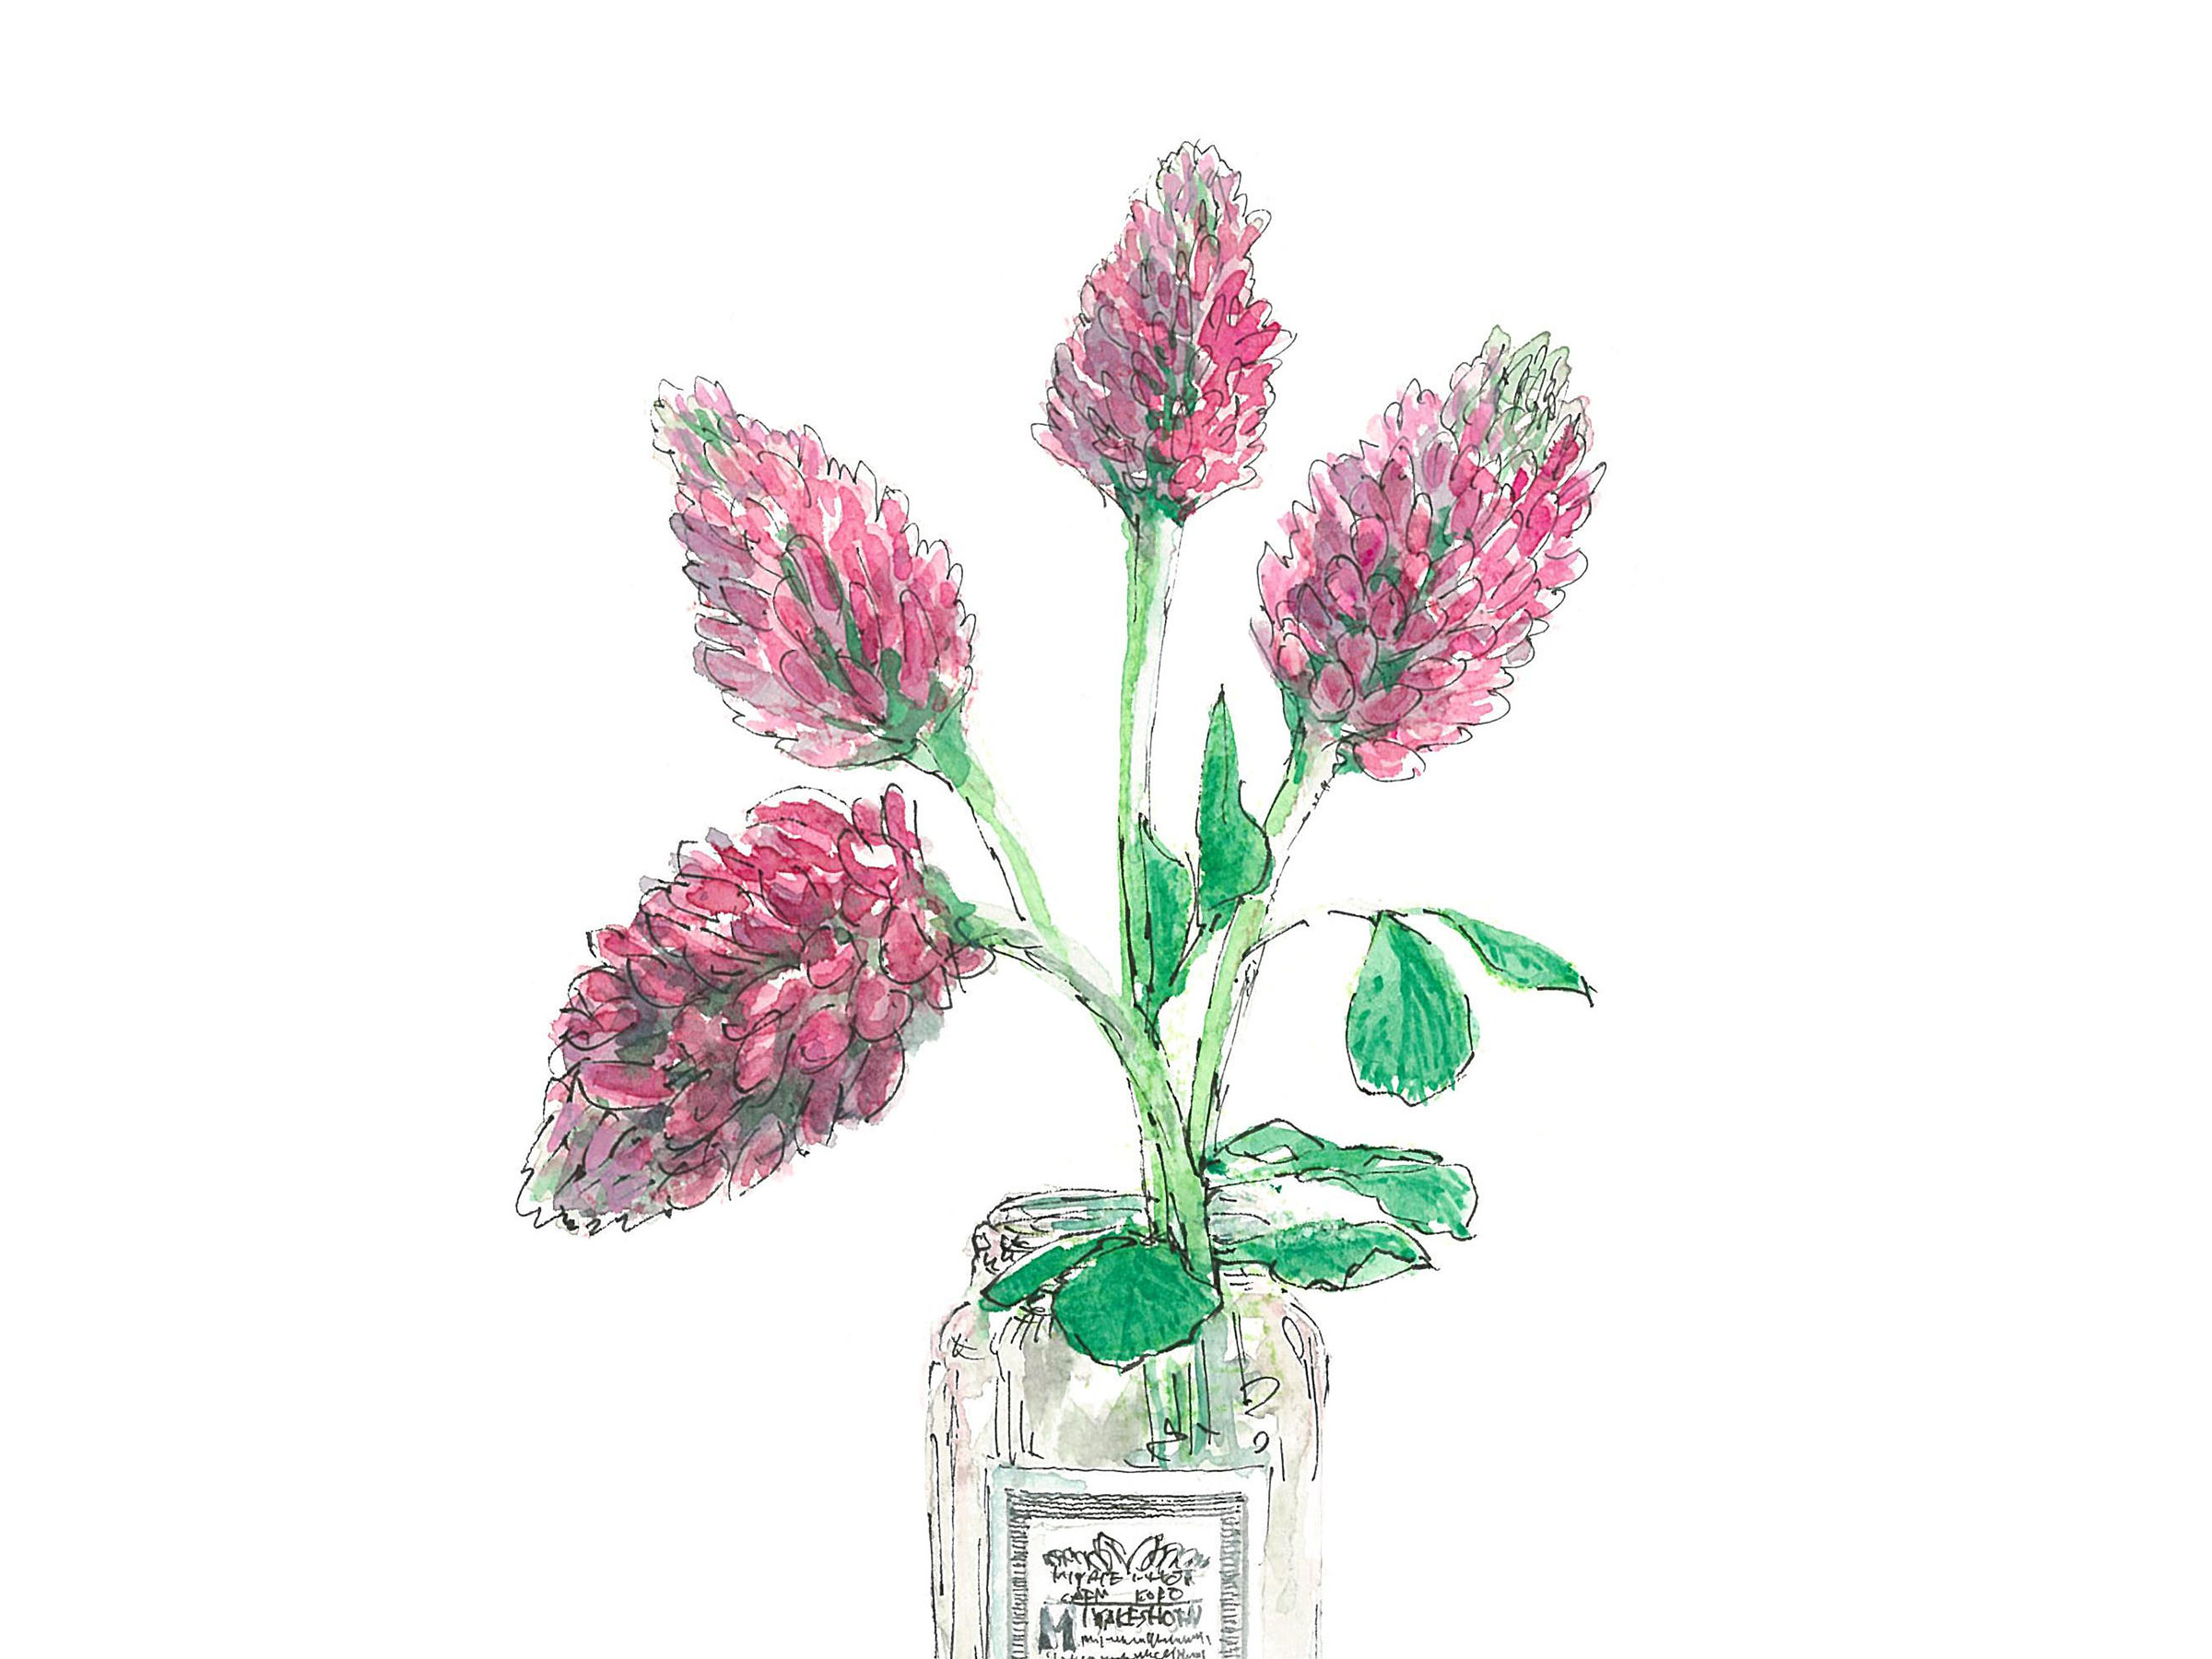 【5月10日の花】ベニバナツメクサ イチゴに似た花をジャムの空き瓶に